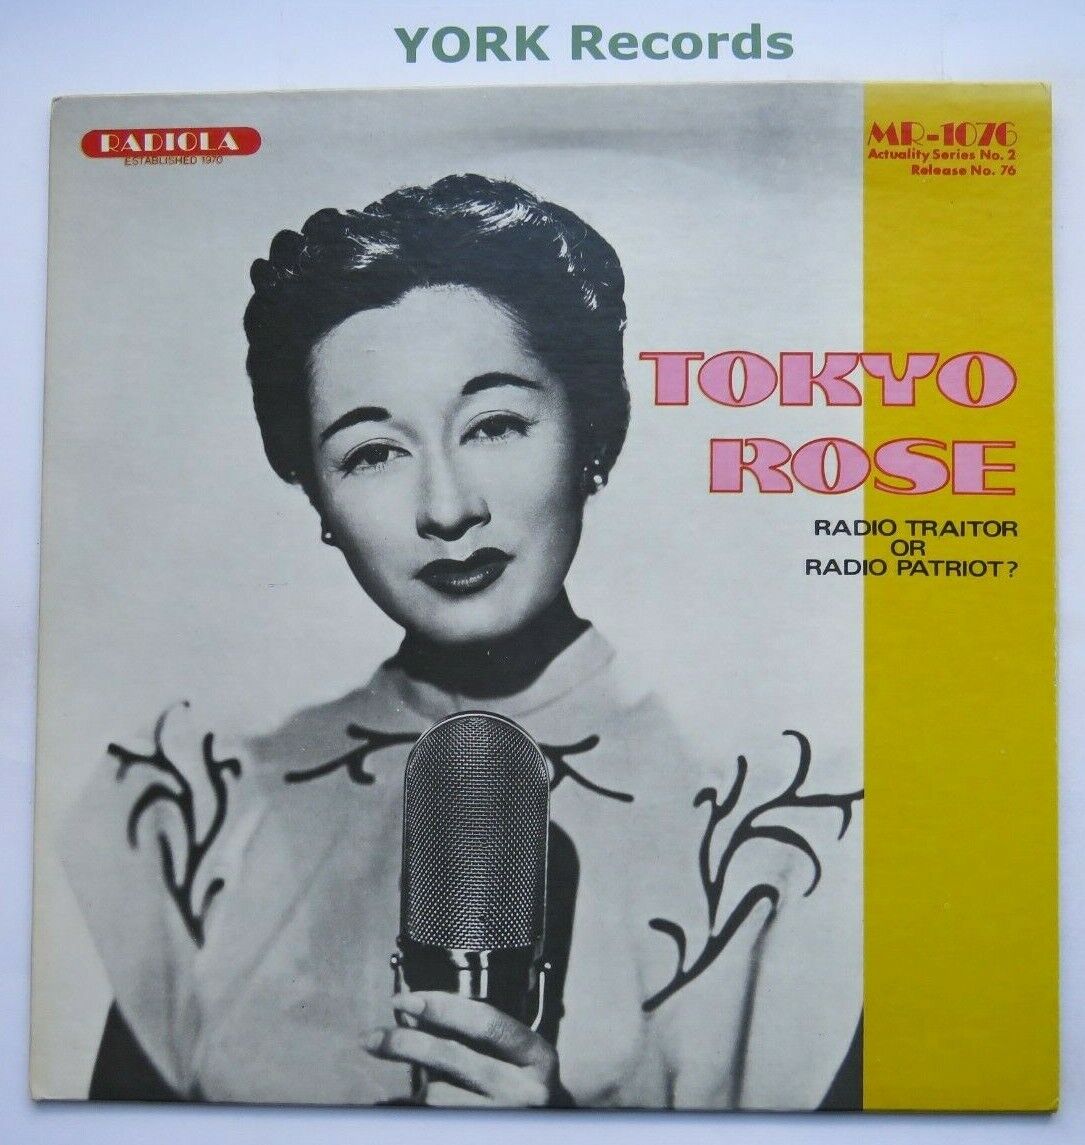 TOKYO ROSE - Radio Traitor Or Radio Patriot - Ex Con LP Record Radiola MR-1076